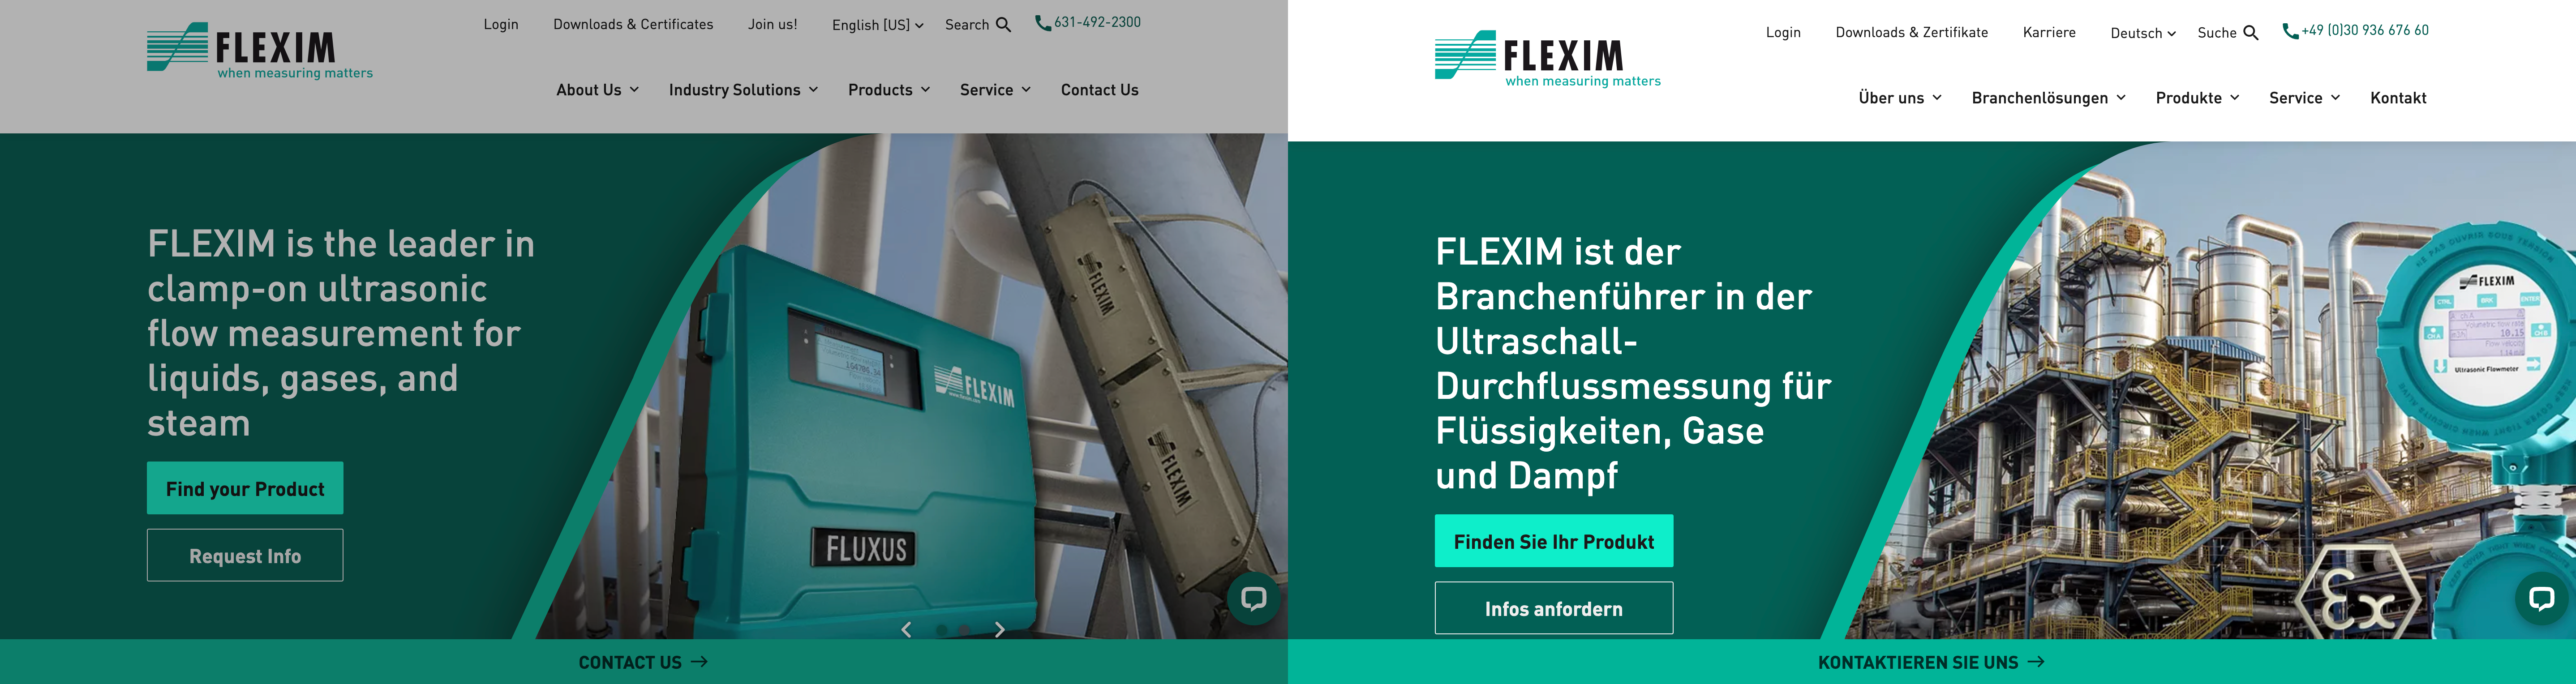 Flexim multilingual site